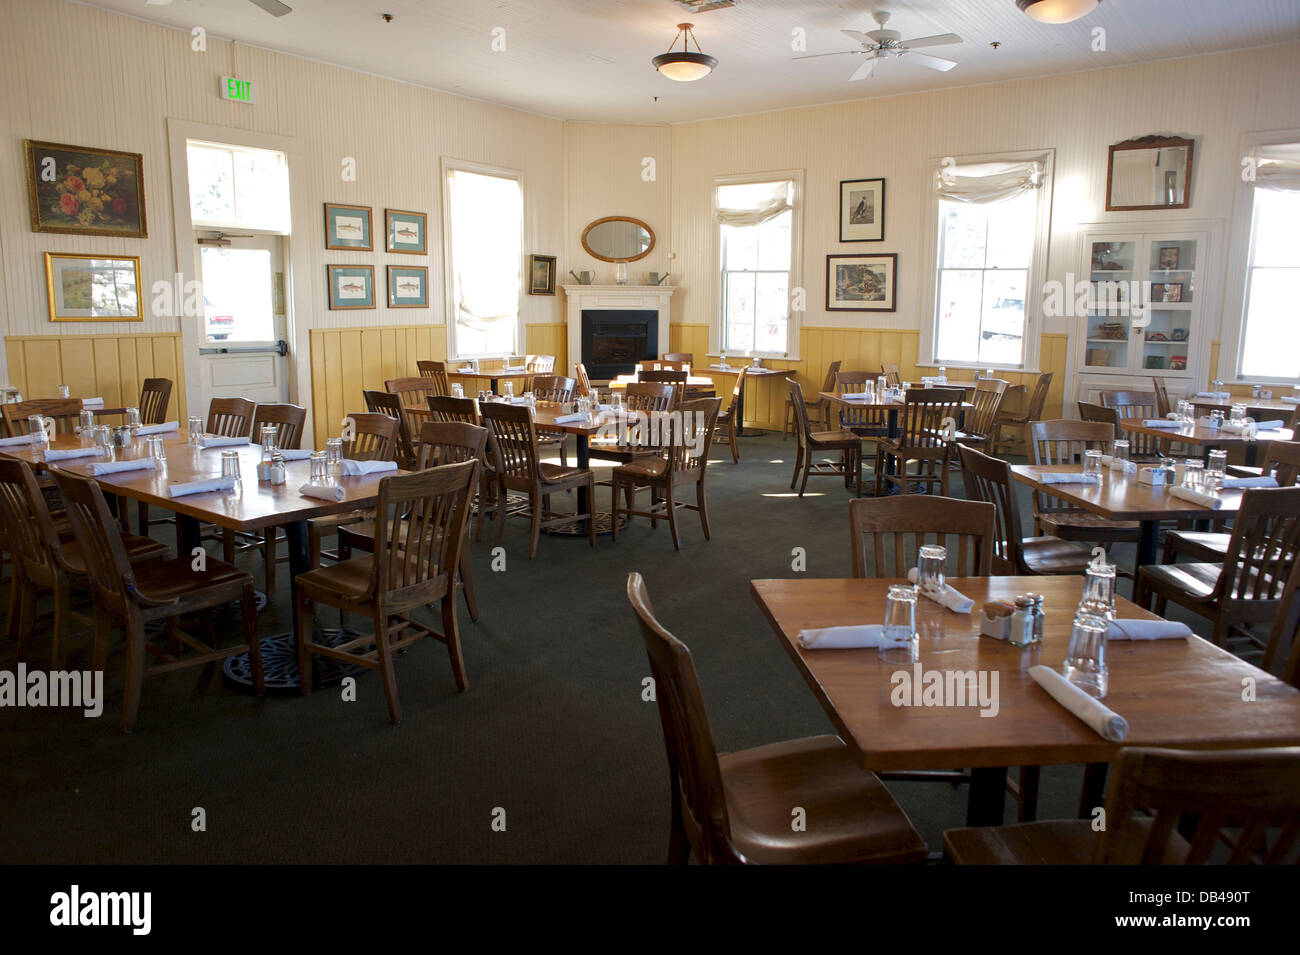 Dining Hall interior, Chautauqua, Boulder, Colorado USA Stock Photo